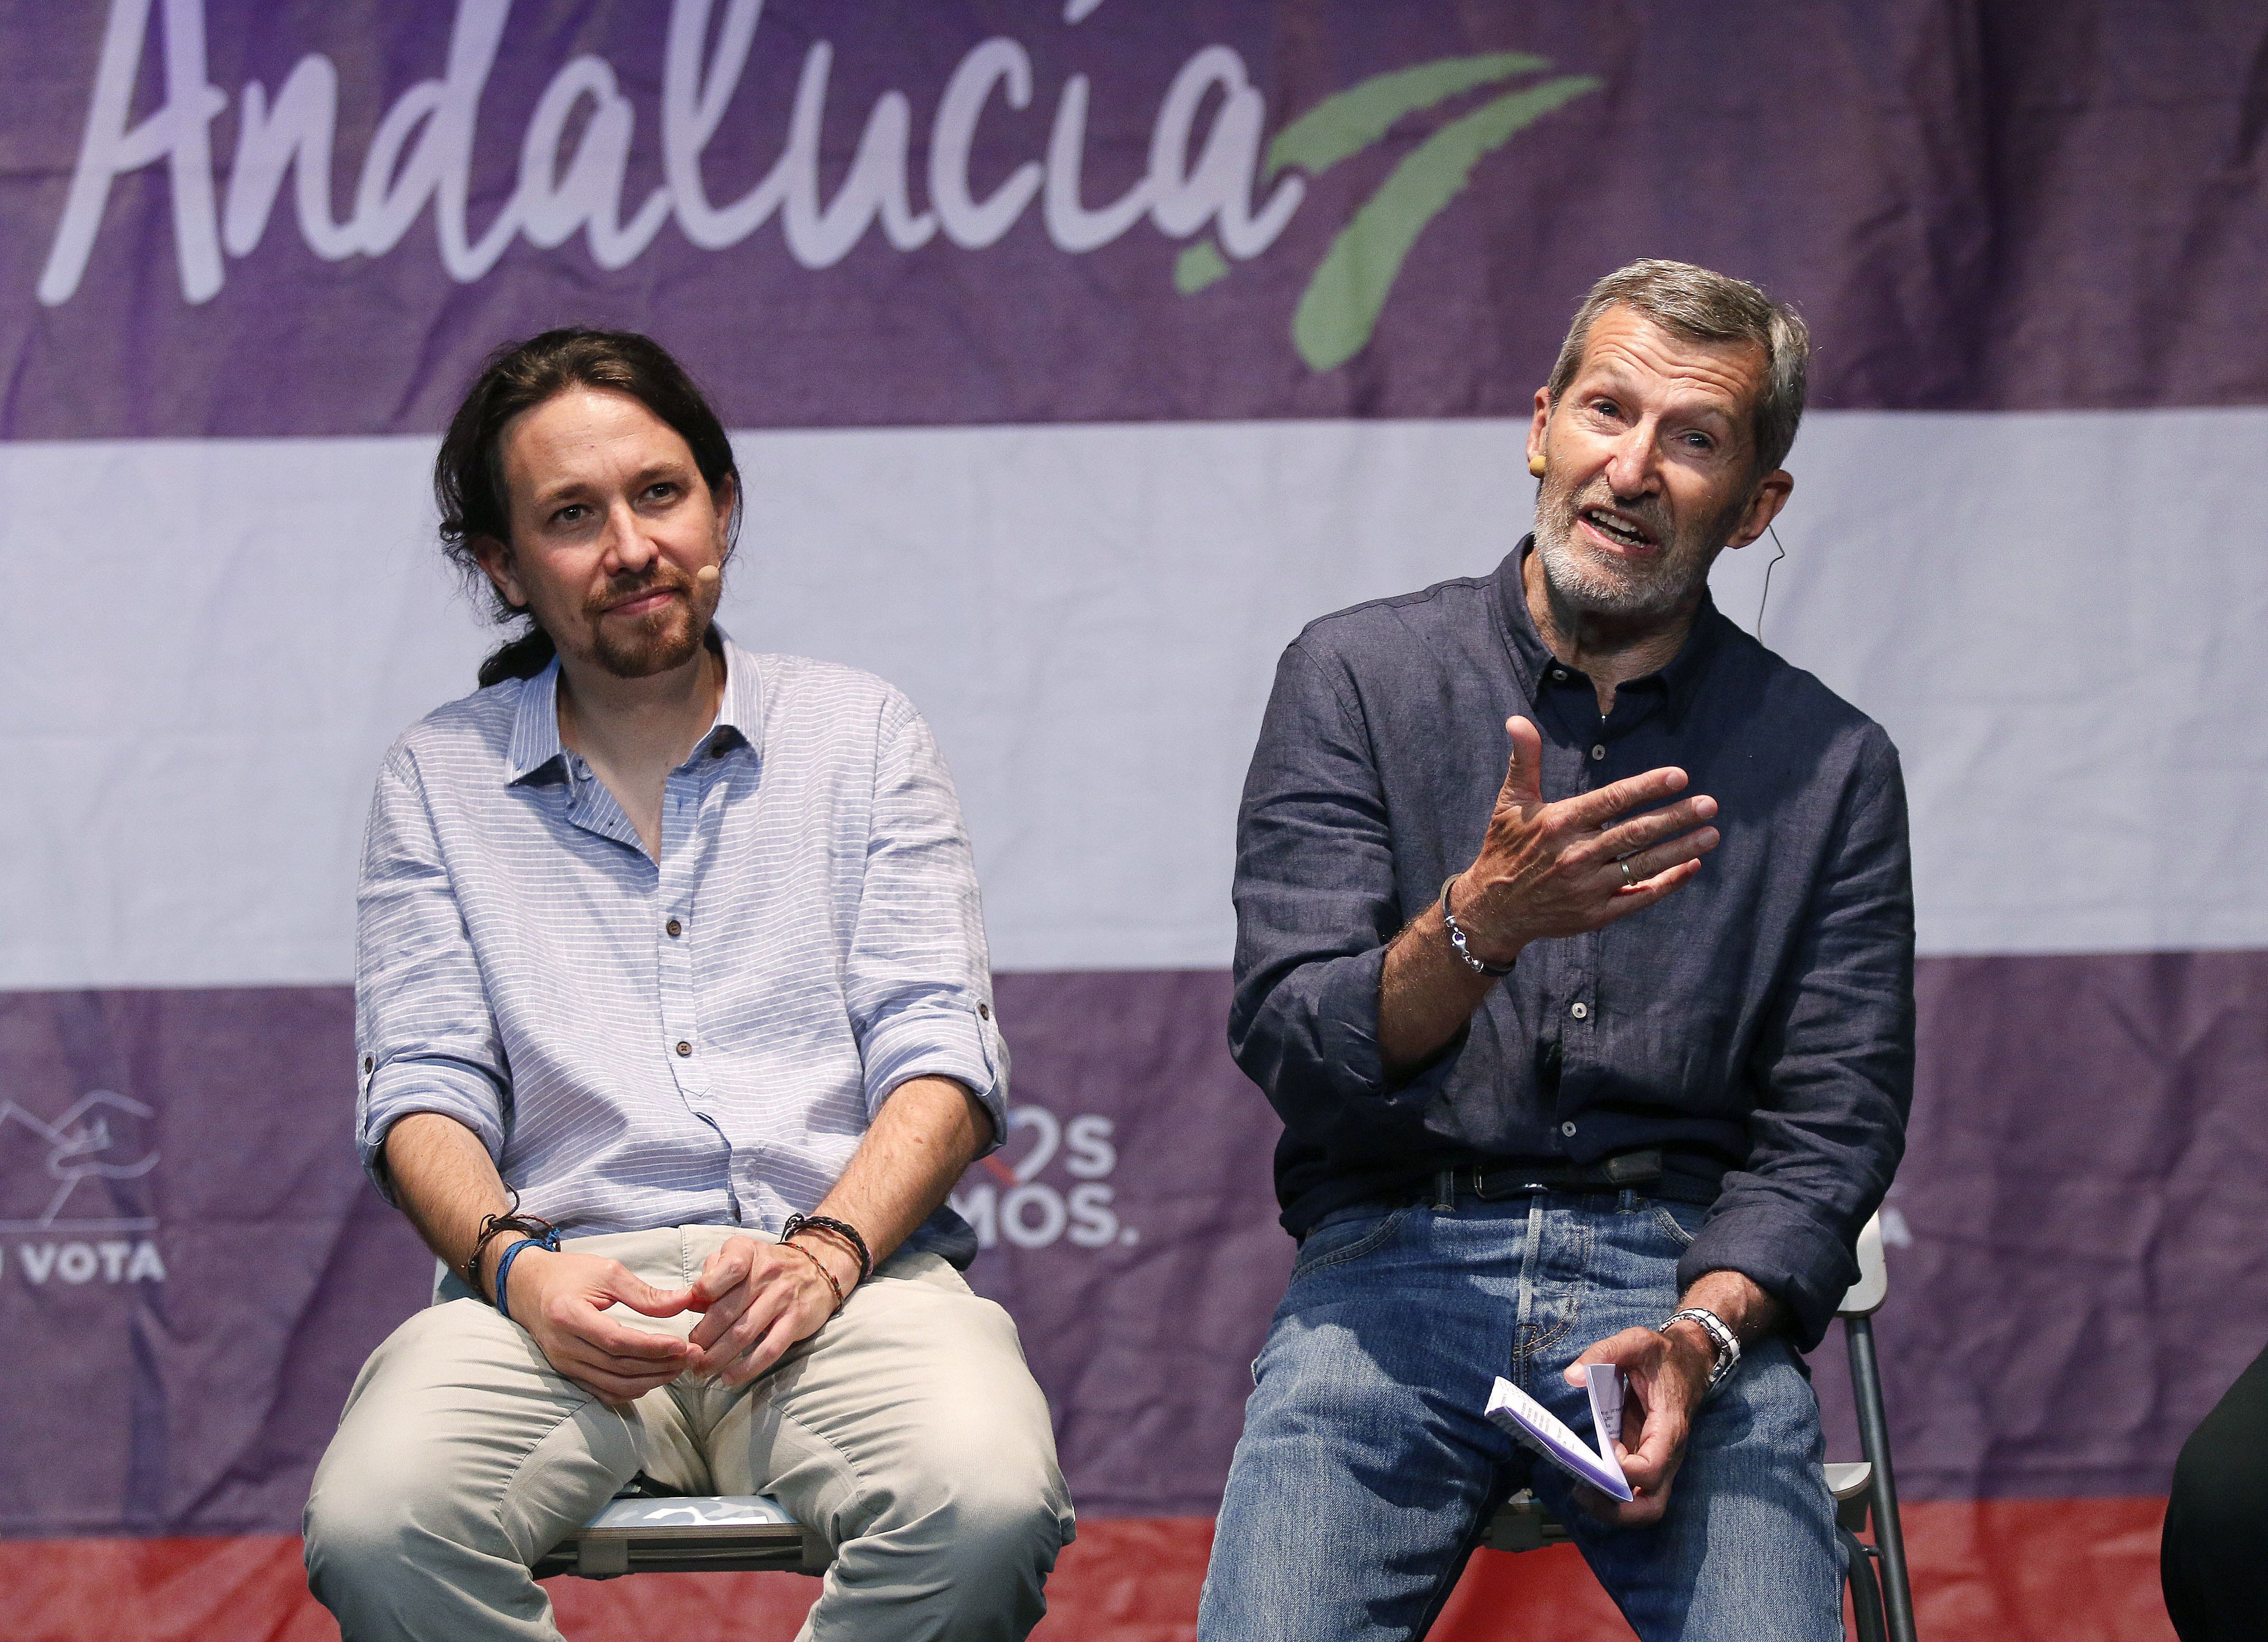 PP i Podemos pugnen per liderar el patriotisme espanyol